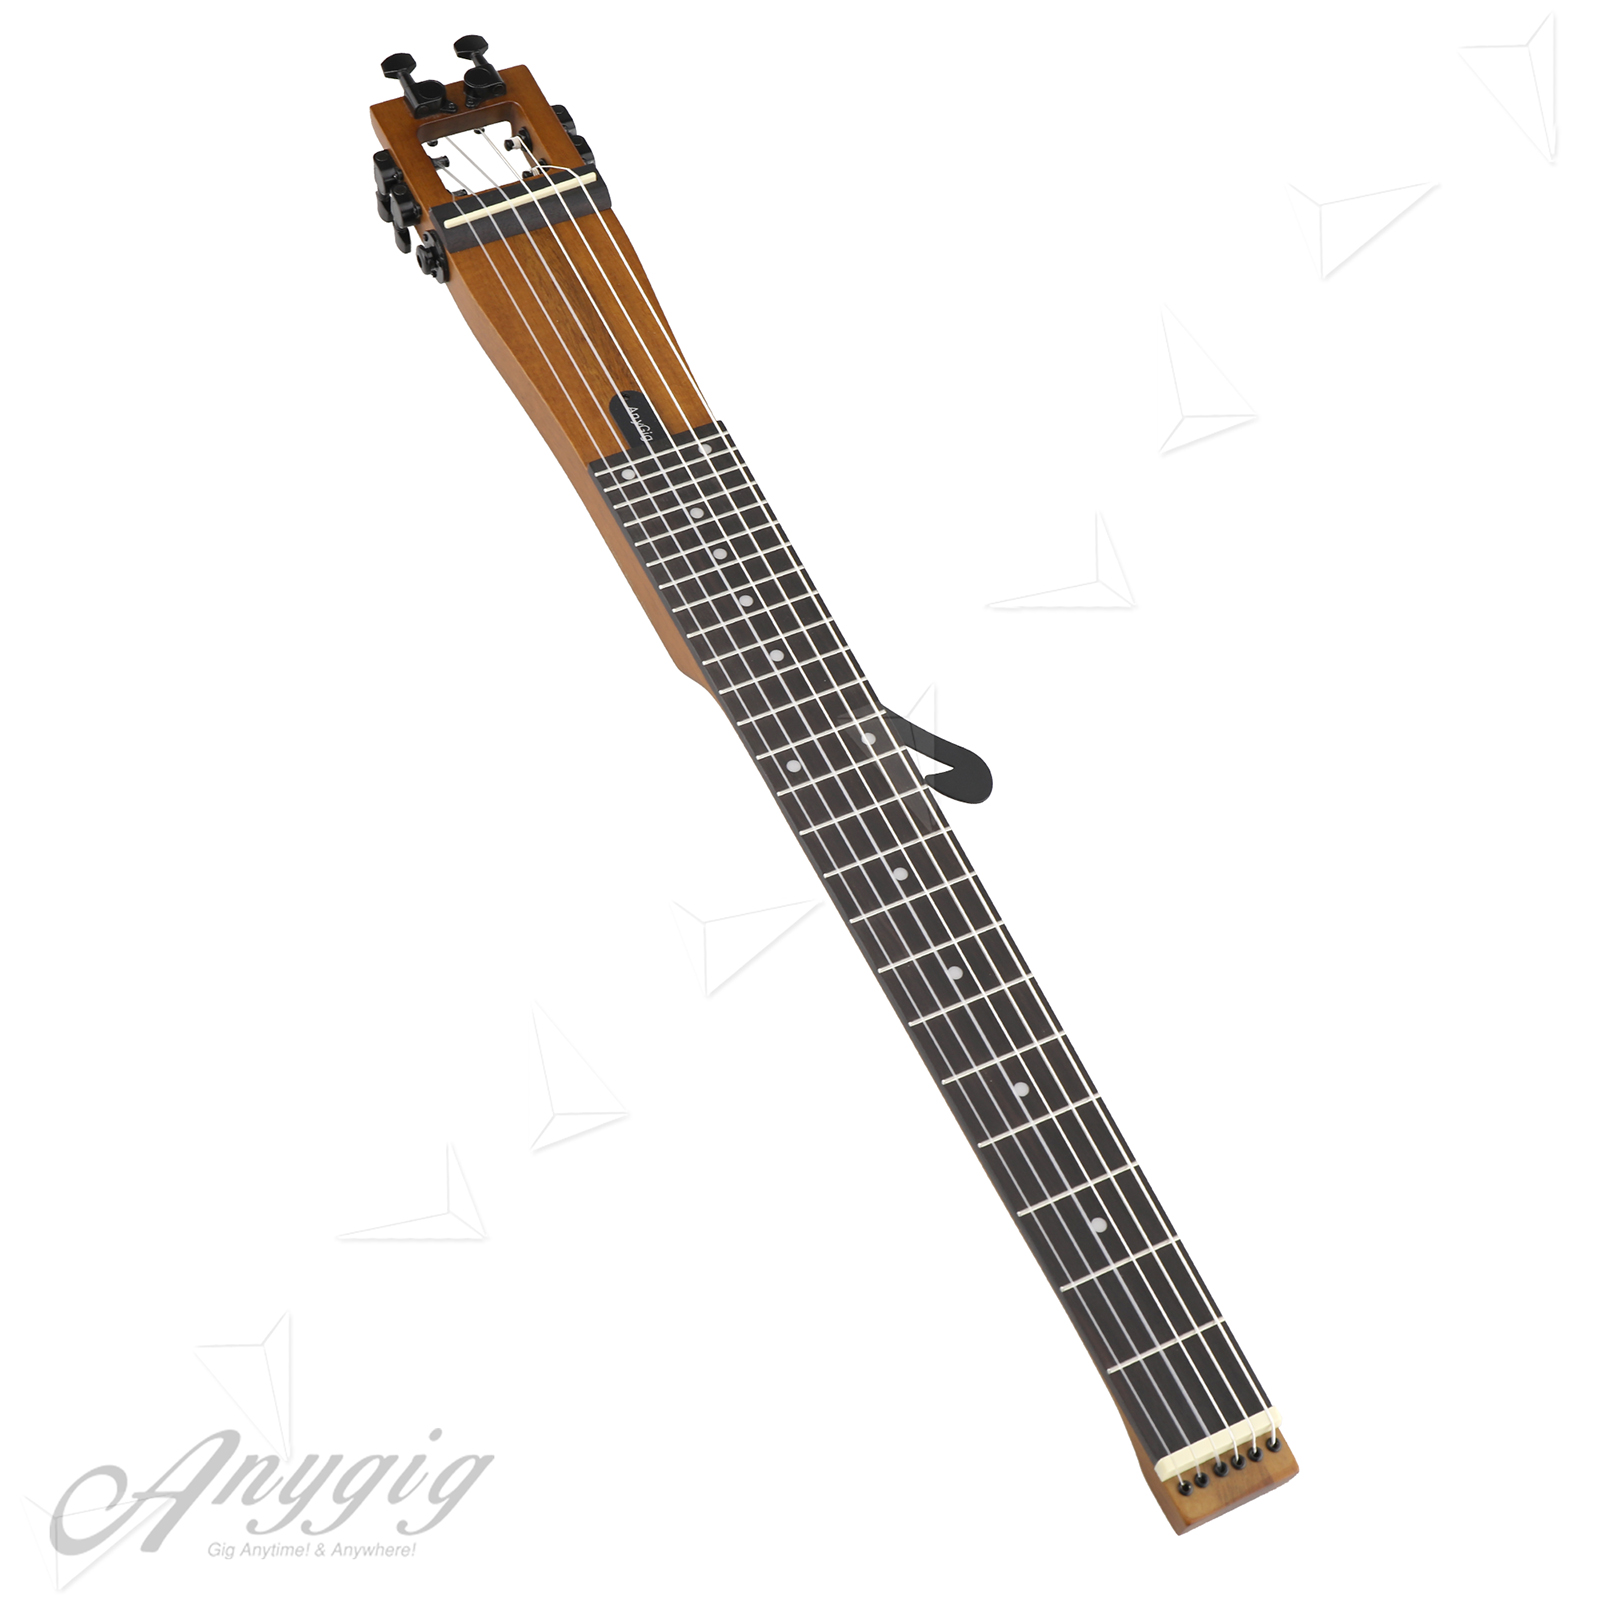 Anygig Agn Nylon String Full Scale Length 25 5 Travel Guitar